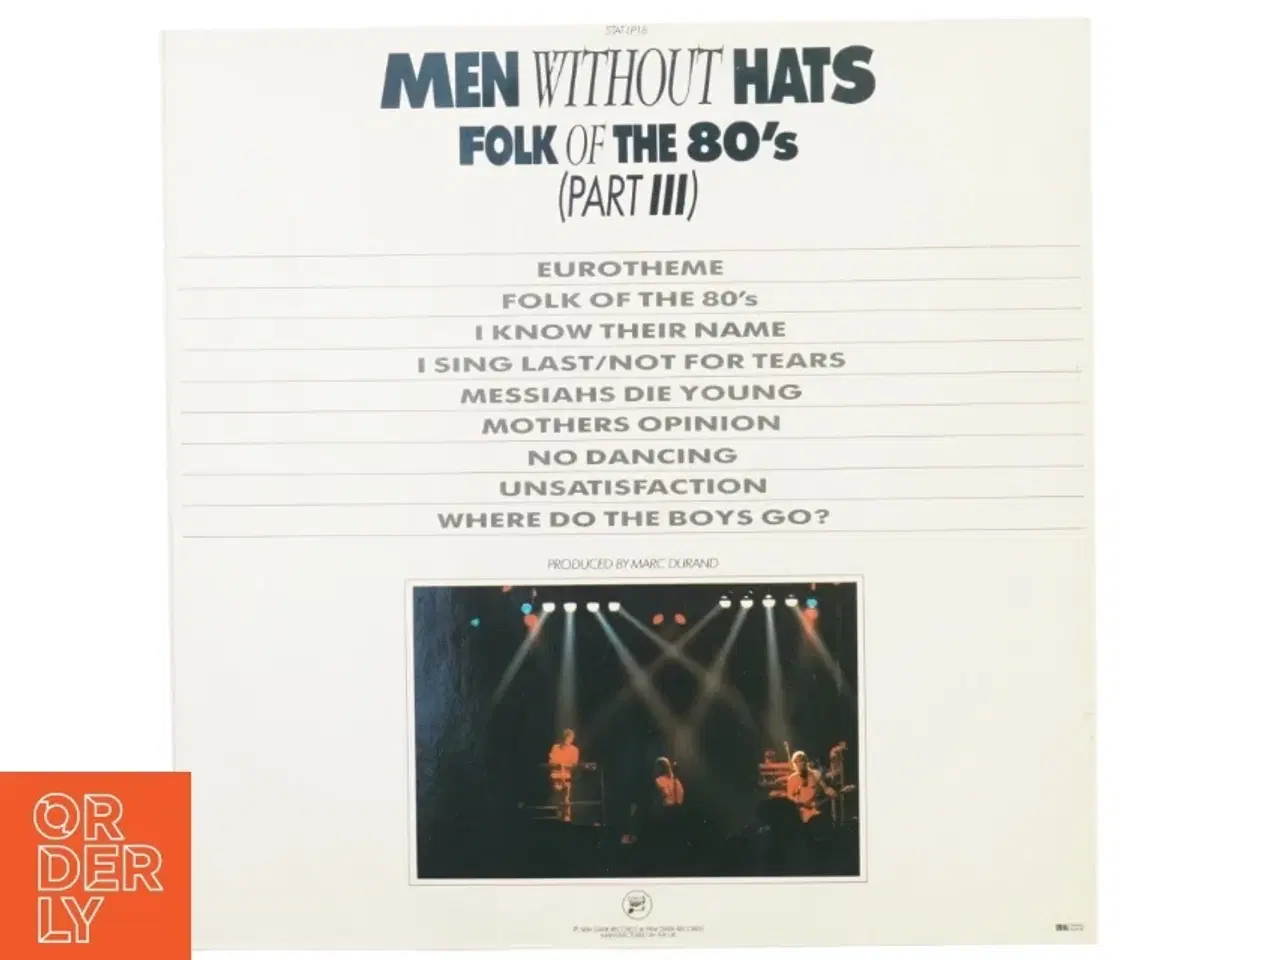 Billede 2 - LP af men without hats fra Mile